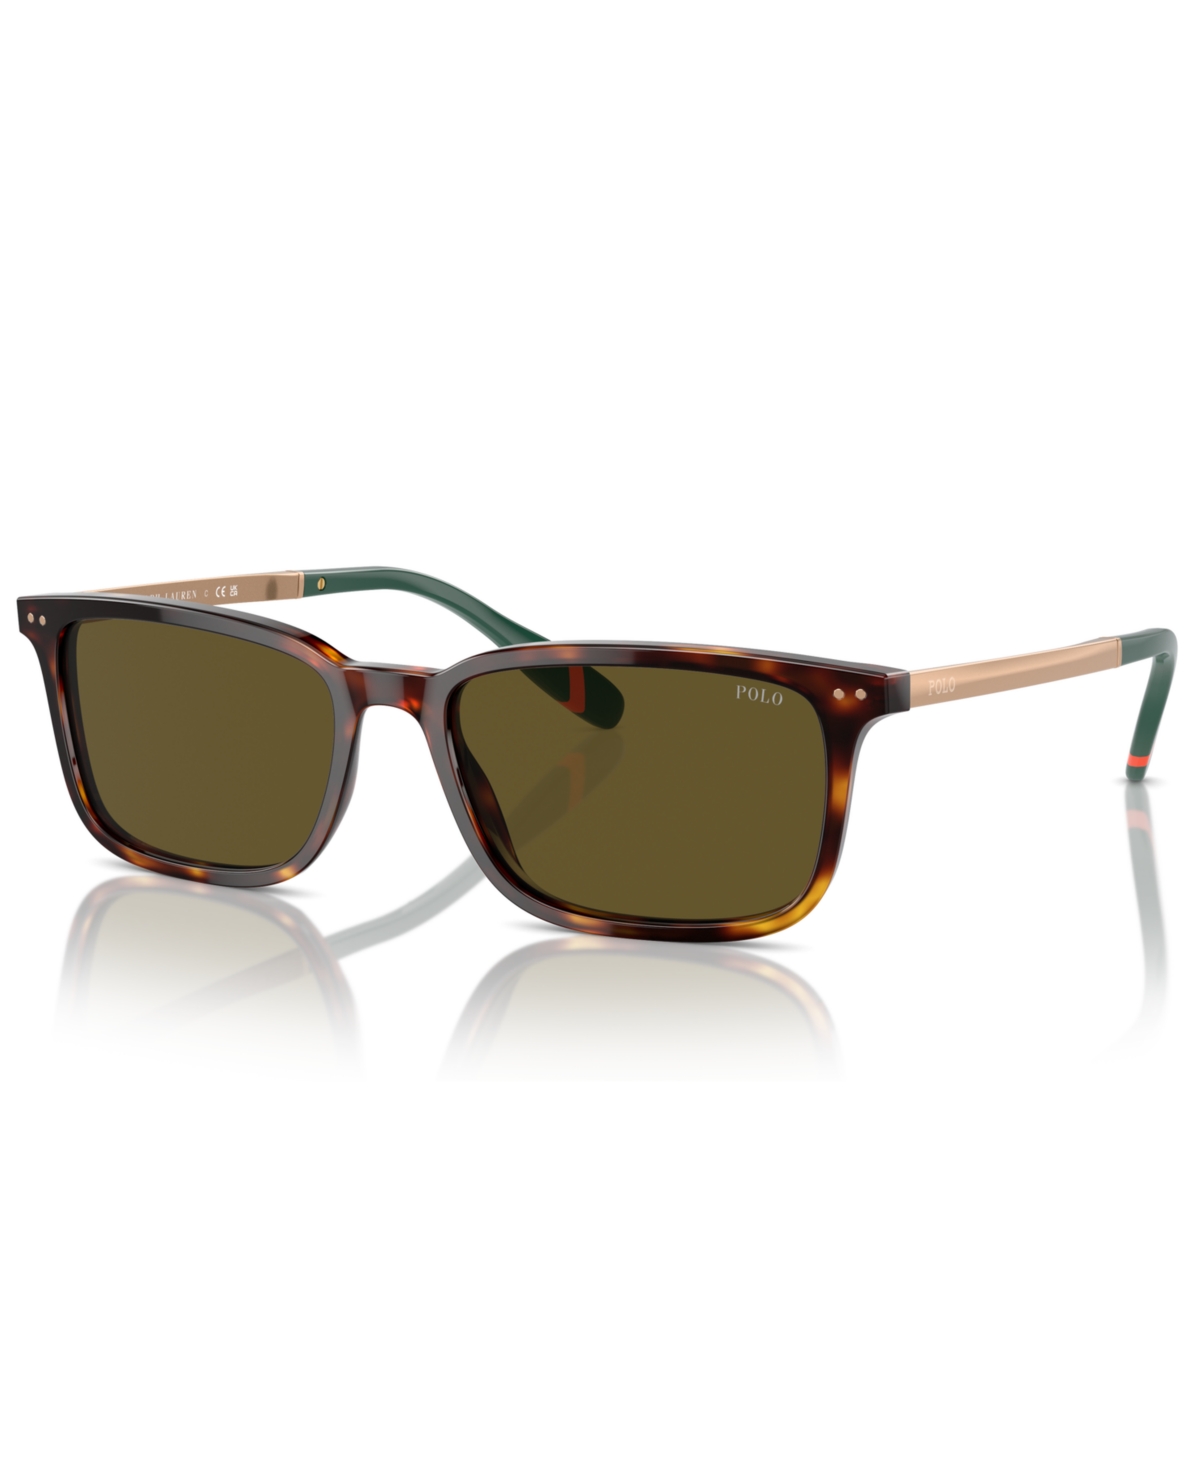 Polo Ralph Lauren Men's Sunglasses, Ph4212 In Shiny Brown Tortoise